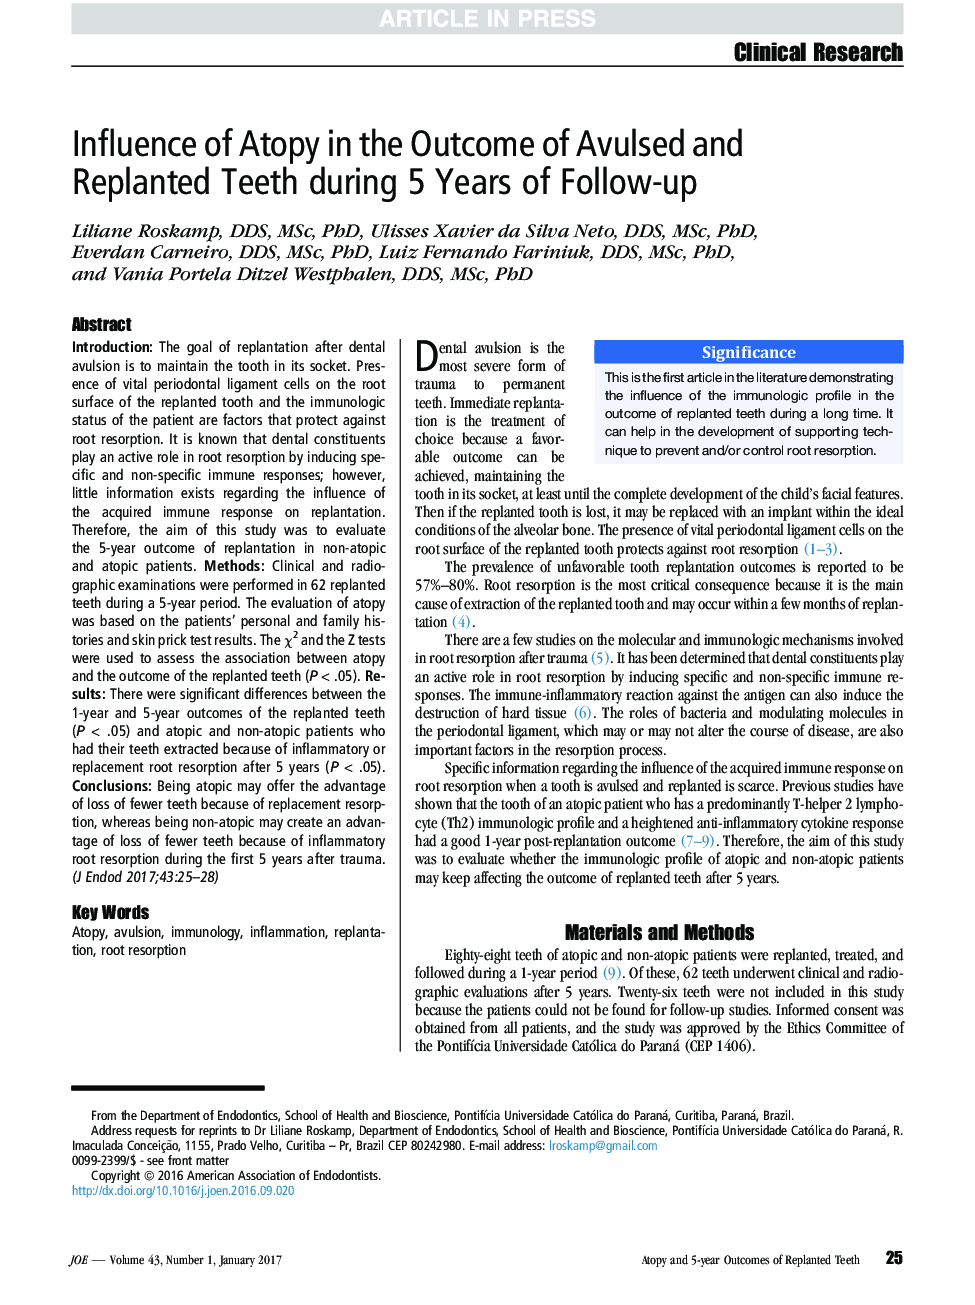 تأثیر آتوپی در نتیجه دندان های آوالدوز و رباط دندان طی 5 سال پیگیری 